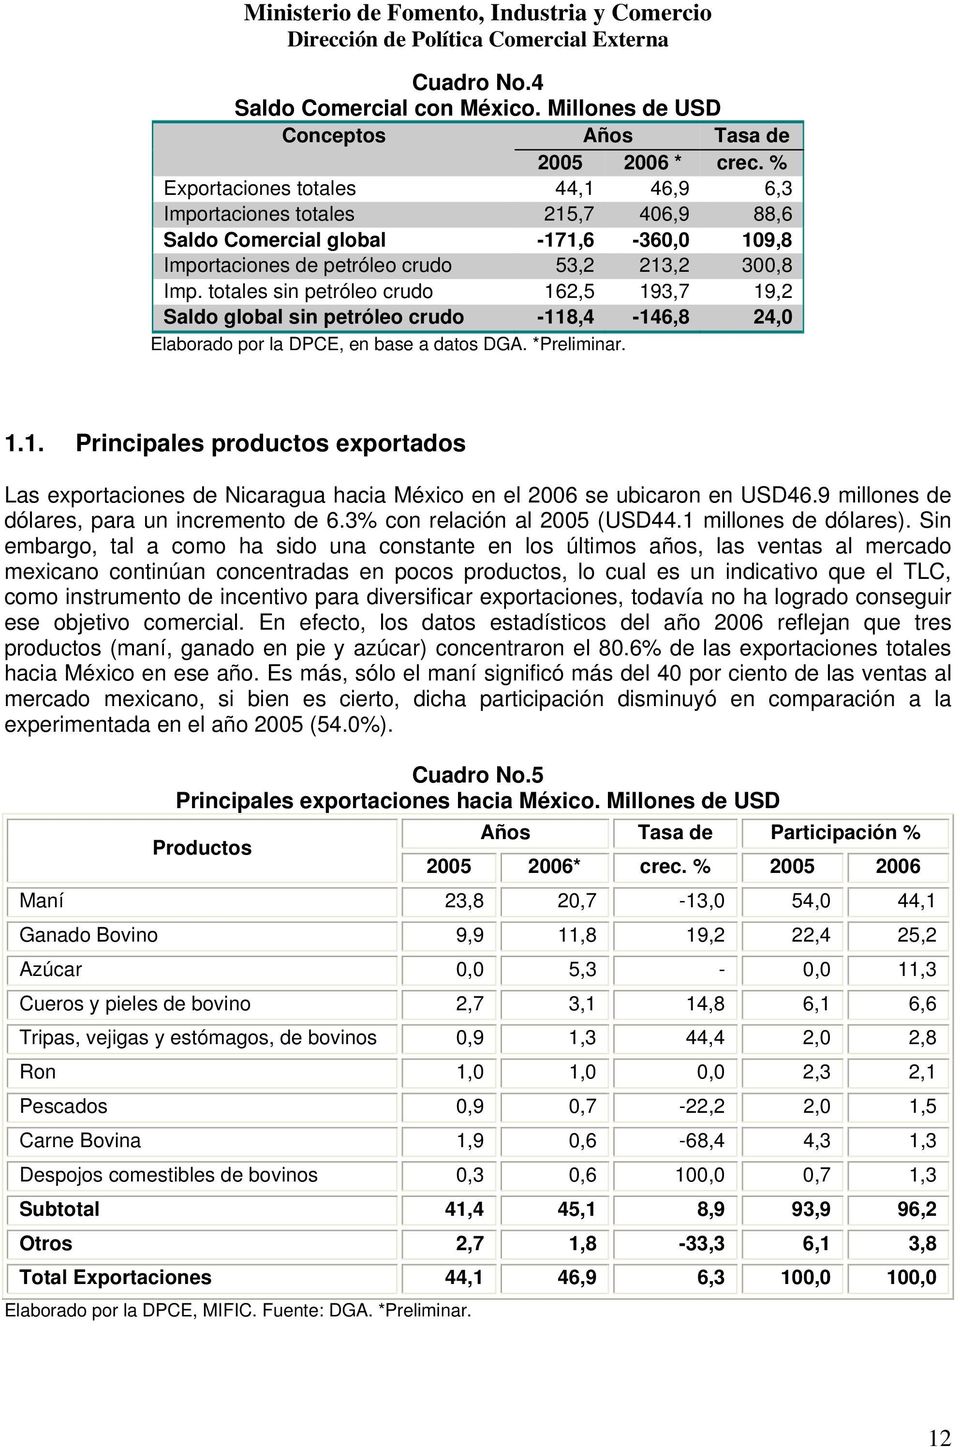 totales sin petróleo crudo 162,5 193,7 19,2 Saldo global sin petróleo crudo -118,4-146,8 24,0 Elaborado por la DPCE, en base a datos DGA. *Preliminar. 1.1. Principales productos exportados Las exportaciones de Nicaragua hacia México en el 2006 se ubicaron en USD46.